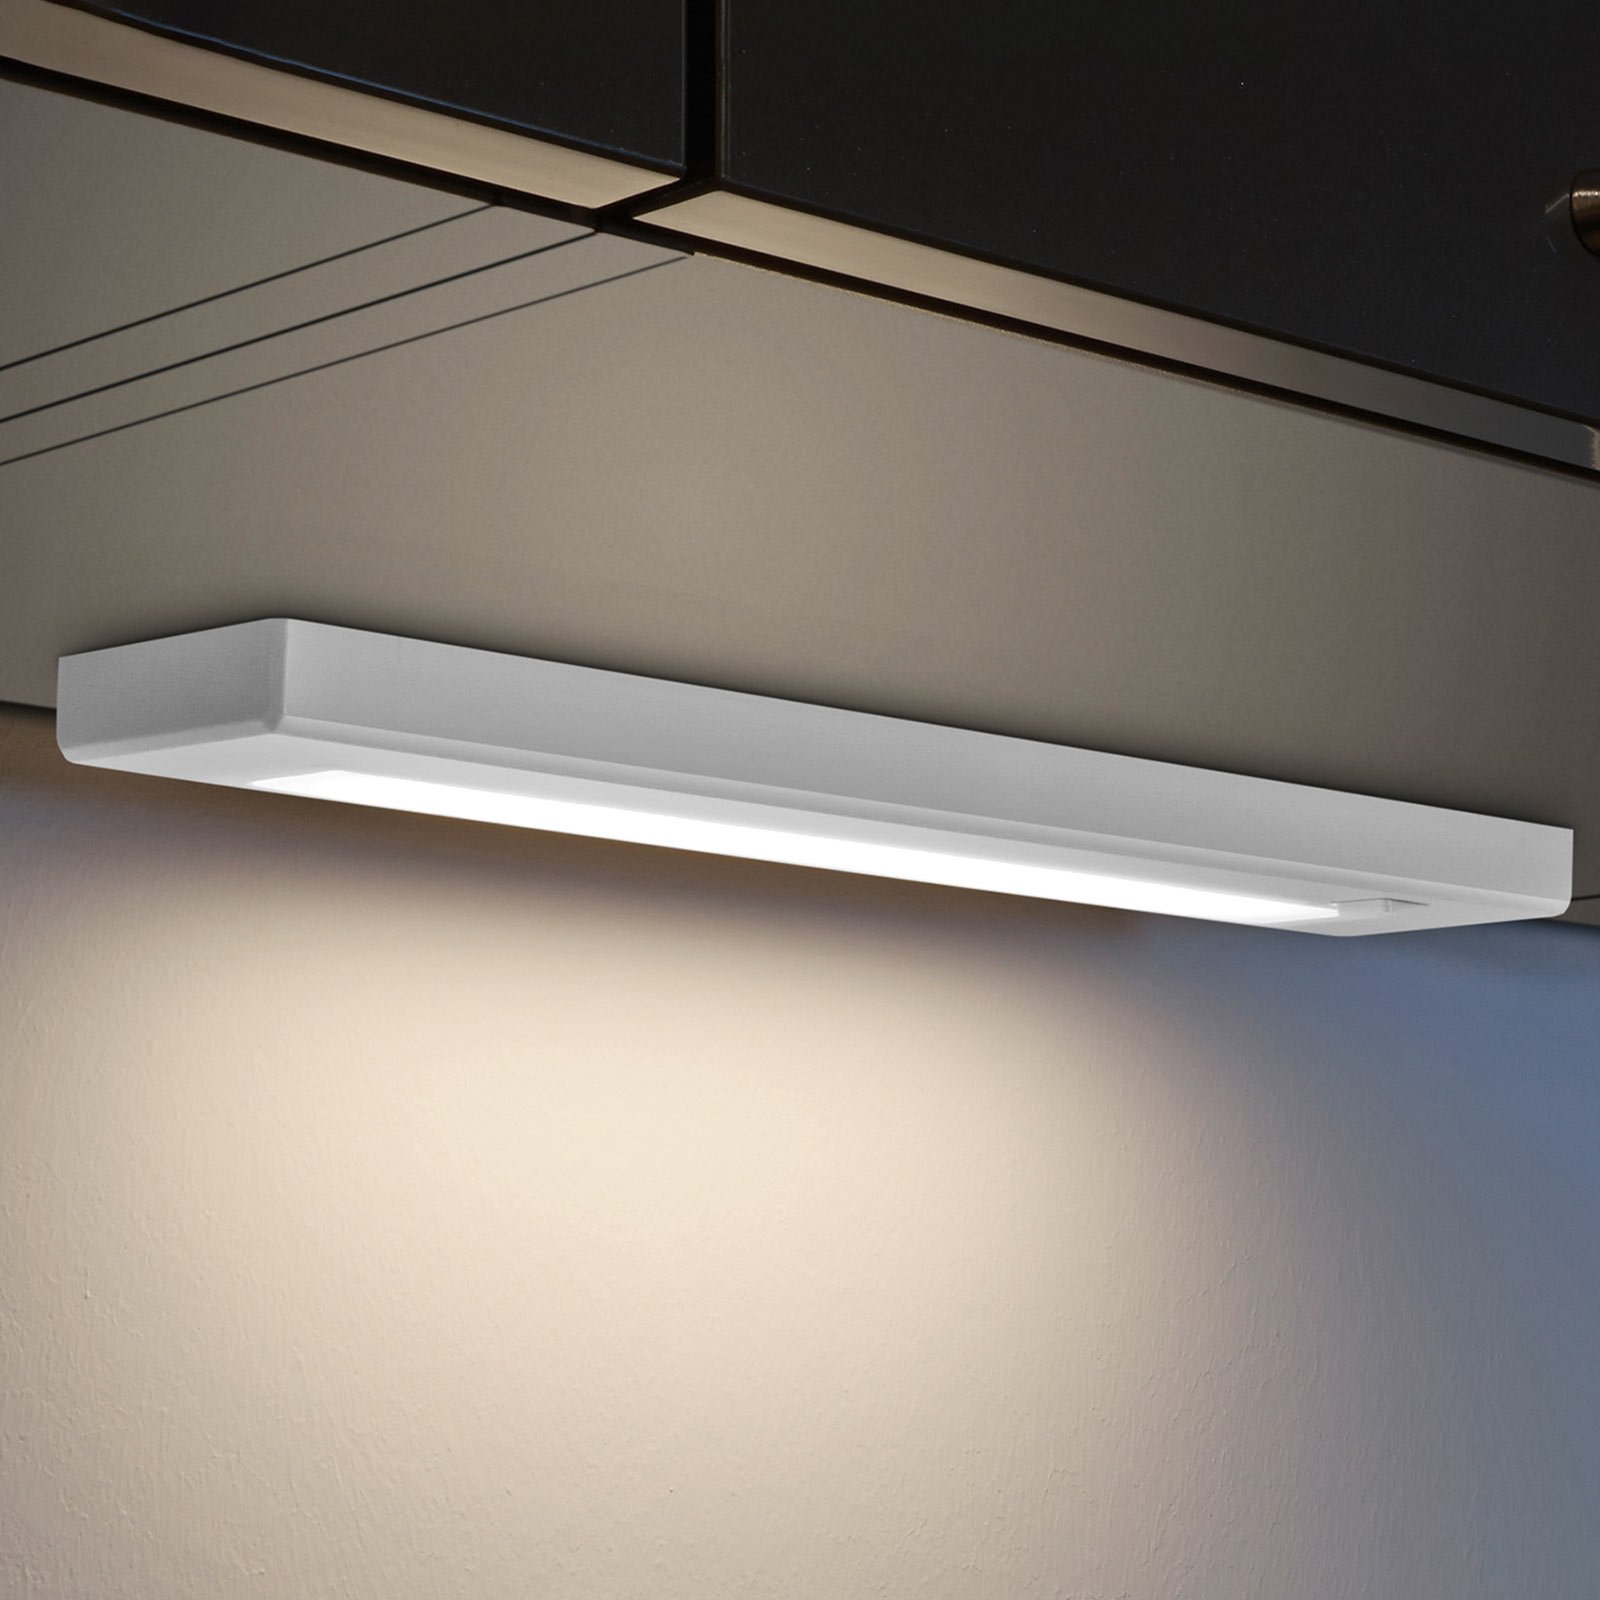 LED svetilo pod omarico Alino, belo, dolžina 34 cm